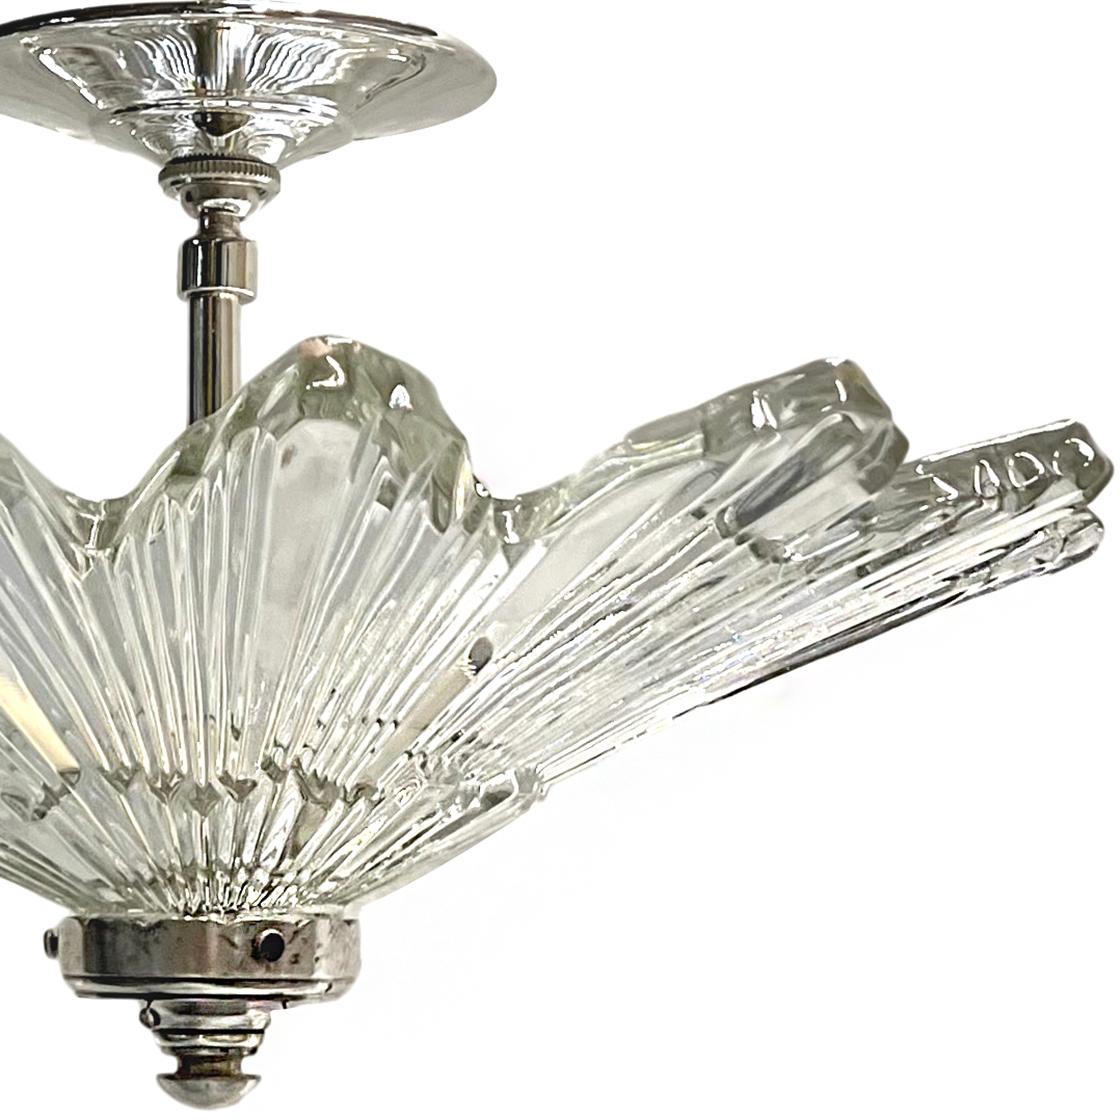 A circa 1930’s molded glass light fixture.

Measurements:
Diameter: 16″
Drop: 10″